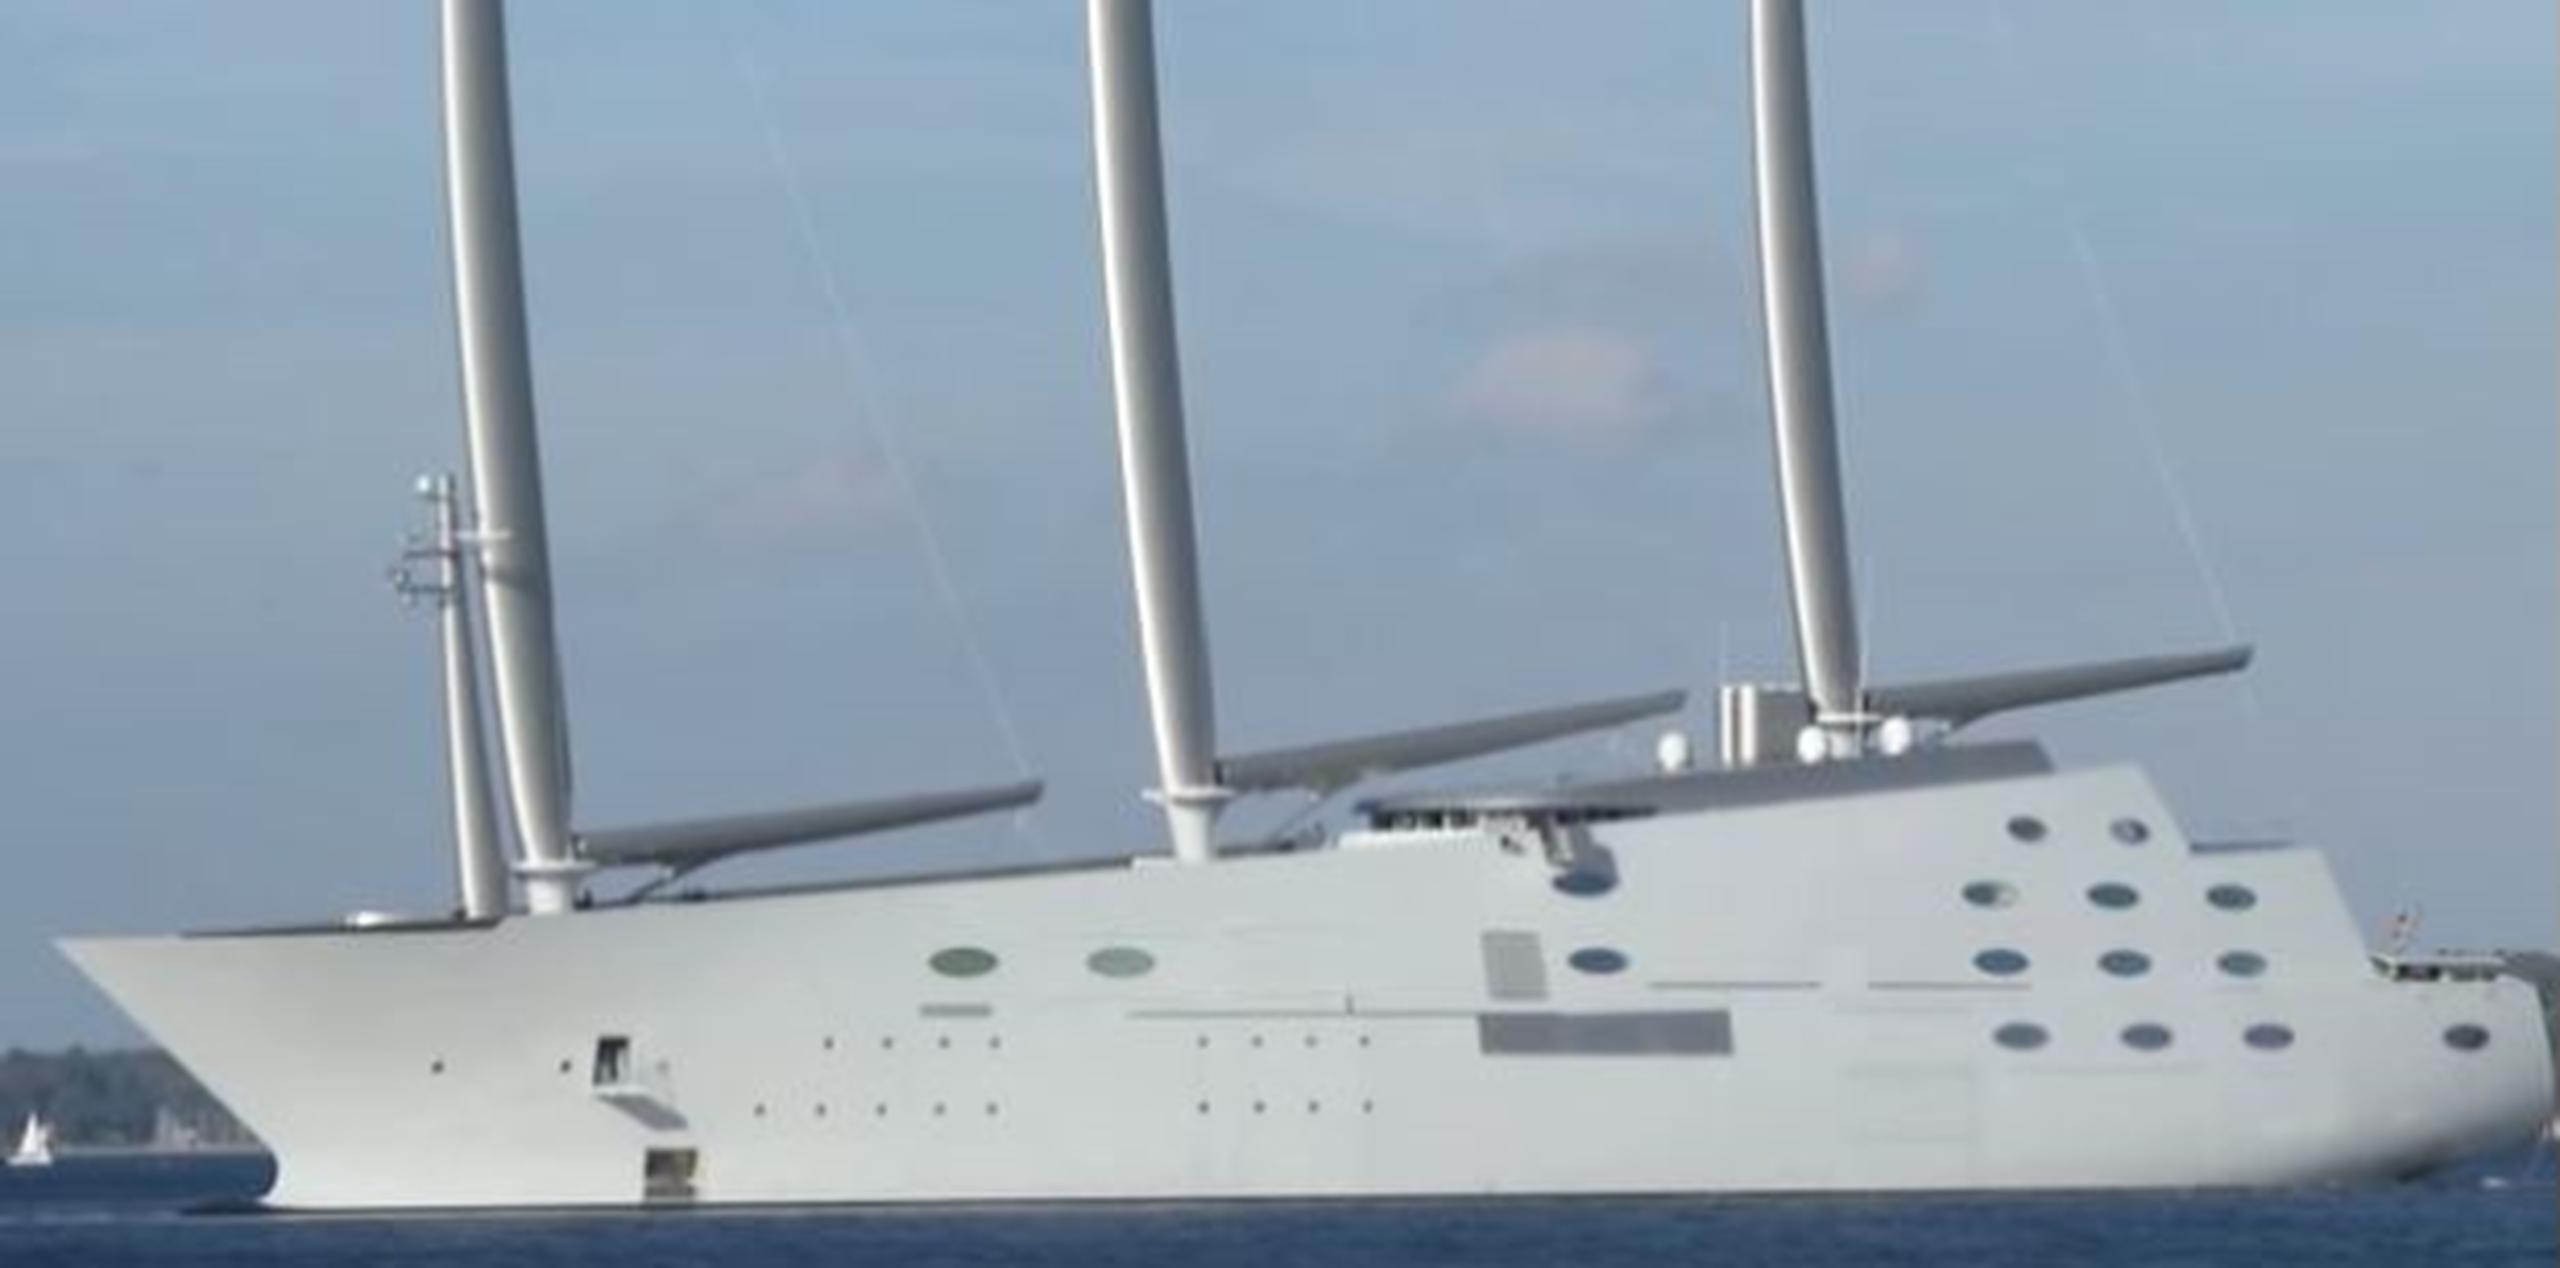 El sitio web de la empresa dice que la embarcación pensada por el diseñador francés de interiores Philippe Starck fue entregada este mes a su cliente, cuyo nombre no ha sido revelado. (Archivo)